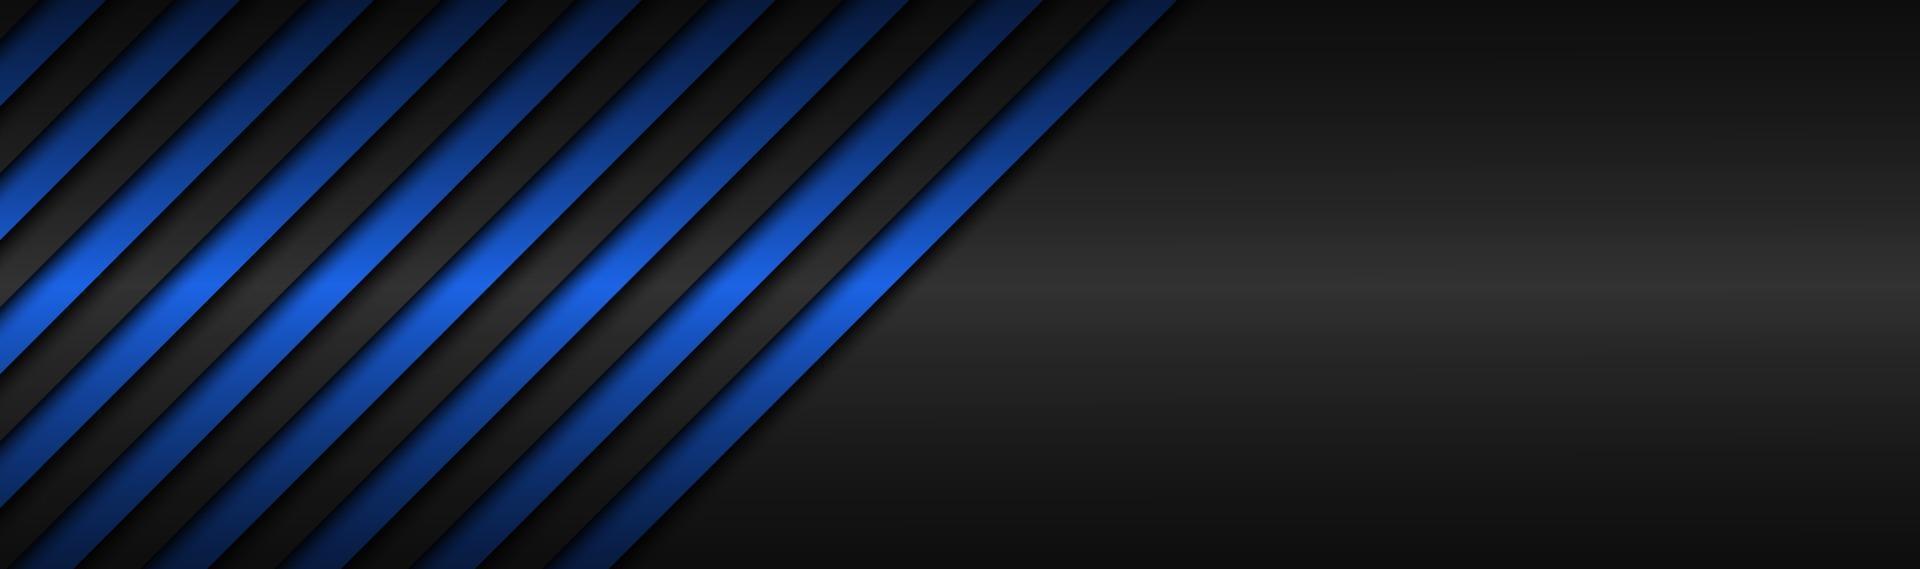 donkerblauwe abstracte metalen vectorkop met schuine lijnen blauw gestreept patroon parallelle lijnen en stroken vector abstracte breedbeeldachtergrond met lege ruimte voor uw logo